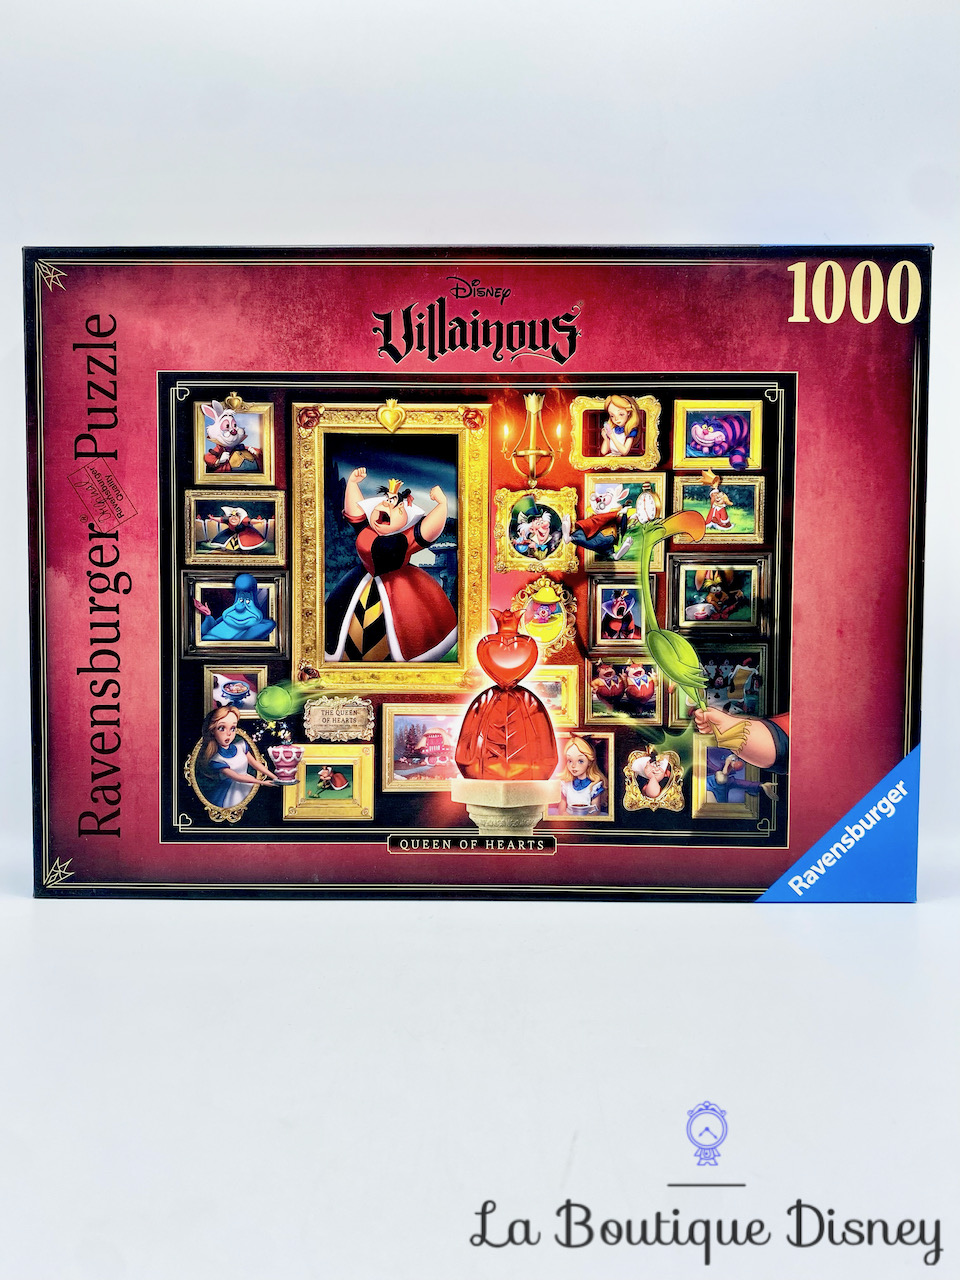 Ravensburger - Puzzles adultes - Puzzle 1000 pièces - Le magasin